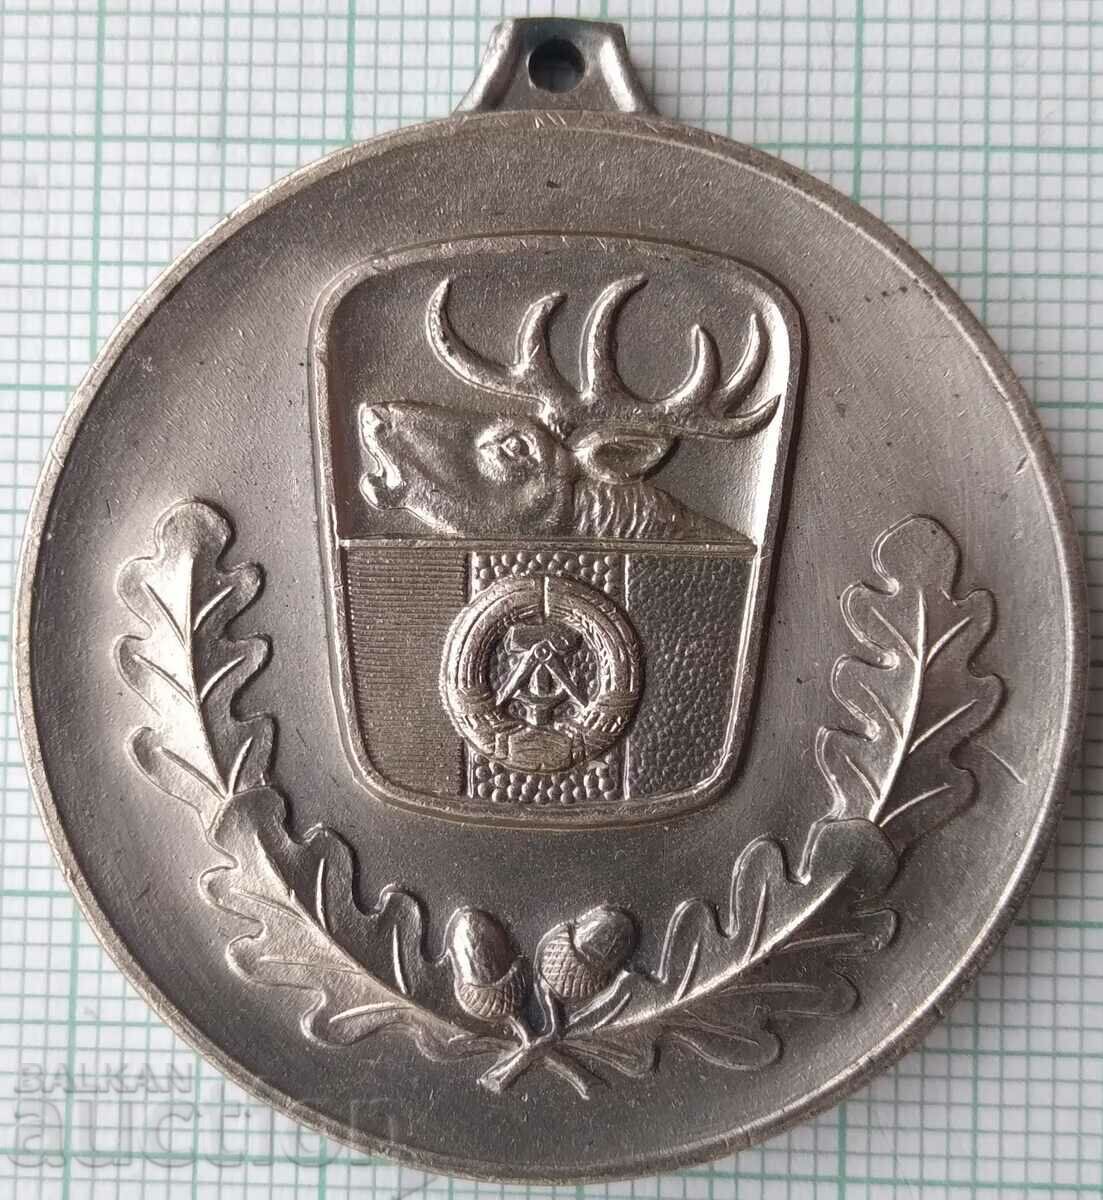 15776 Μετάλλιο - Κυνήγι ΛΔΓ Γερμανία